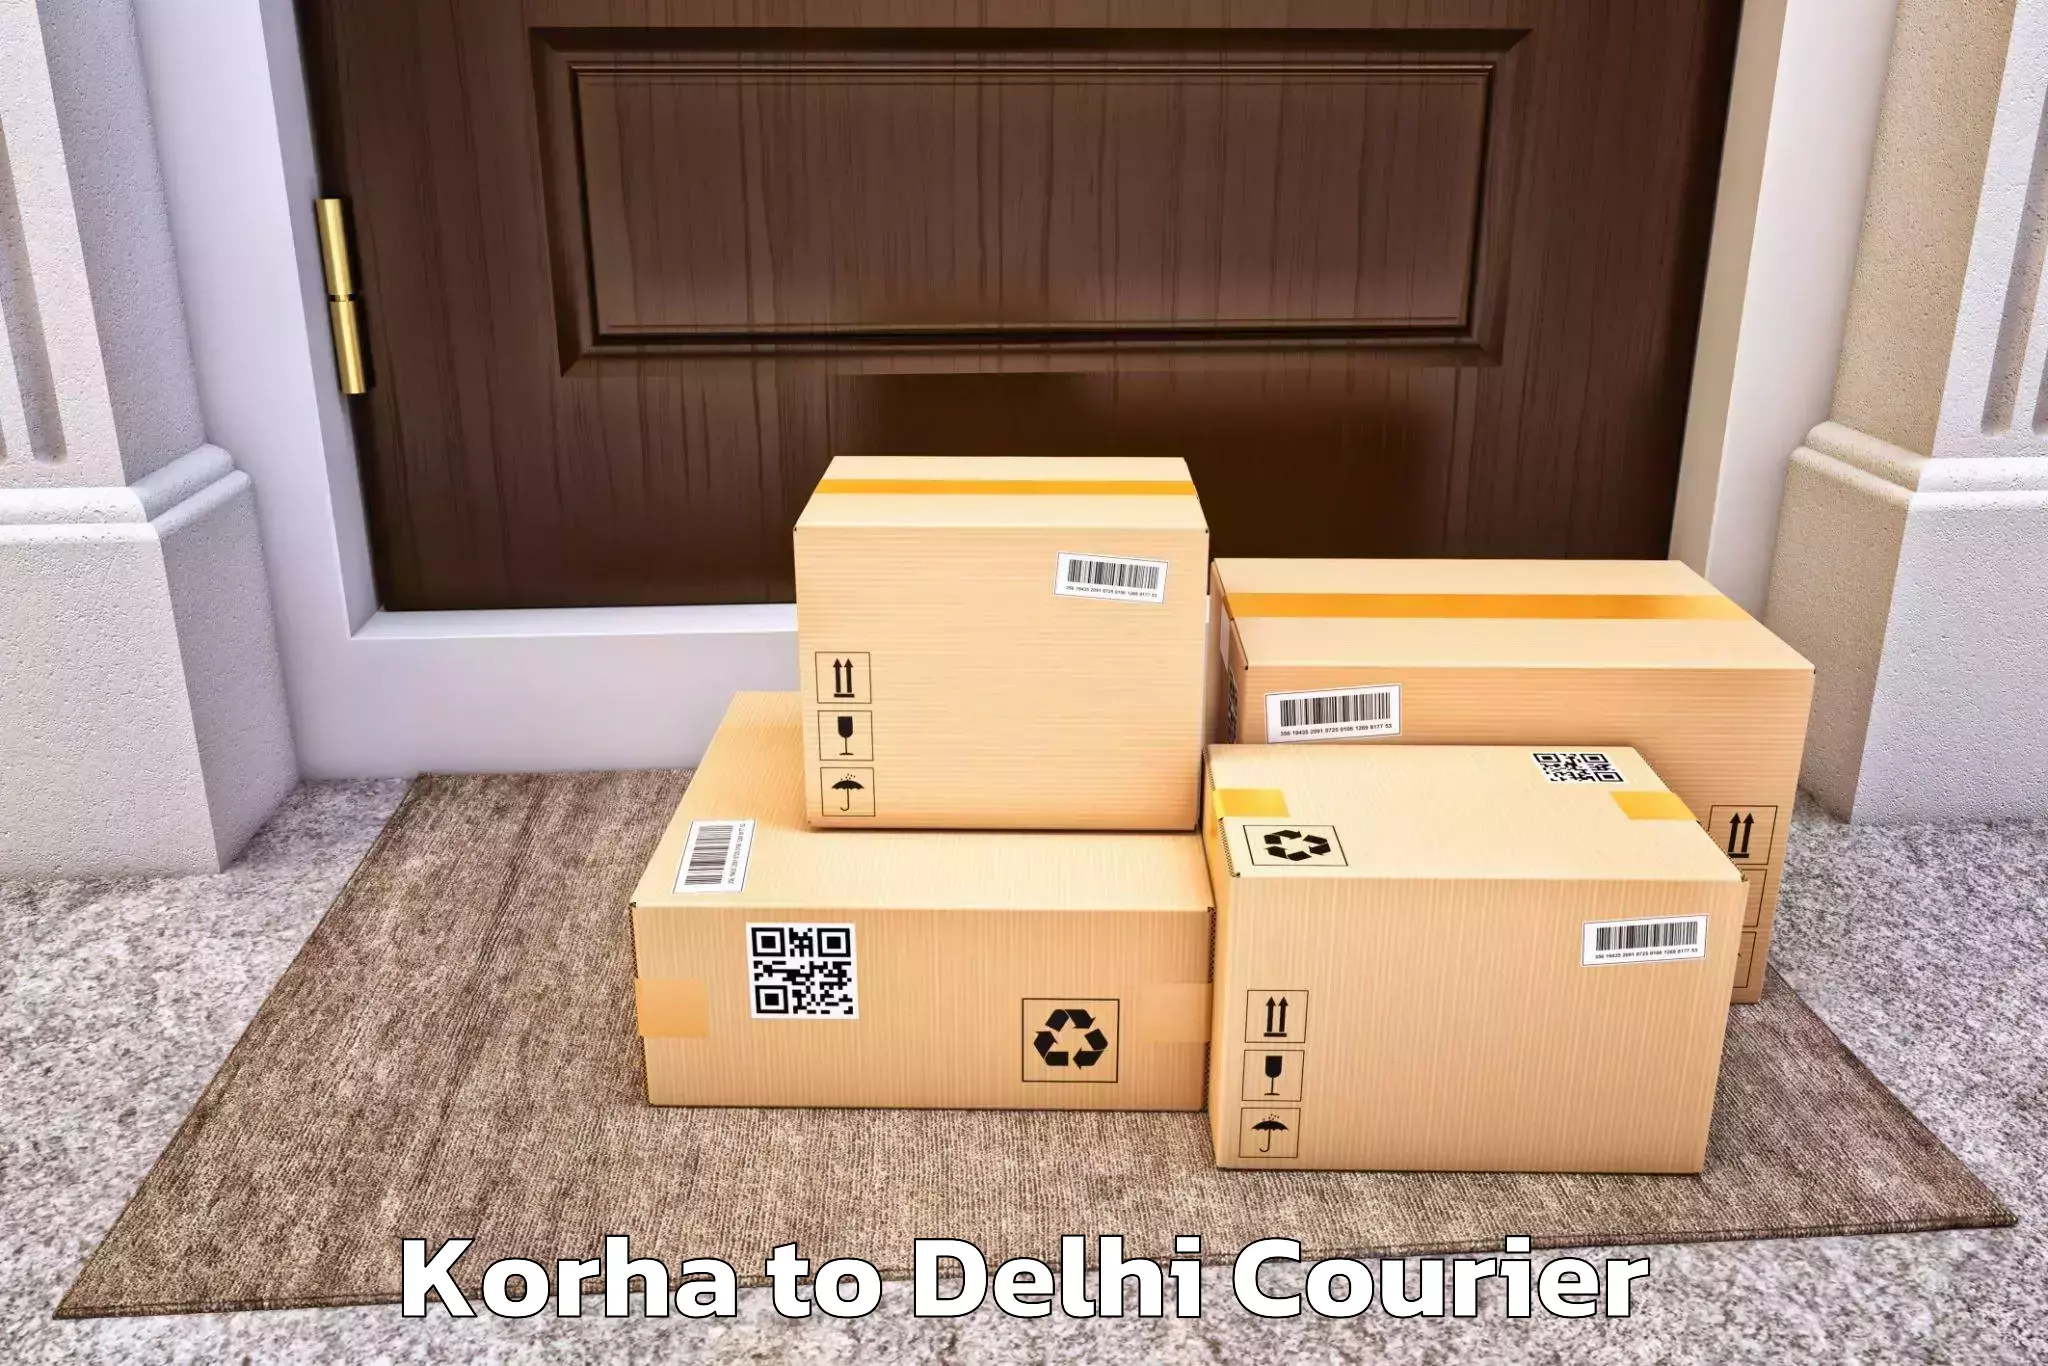 Professional moving company Korha to Sarojini Nagar